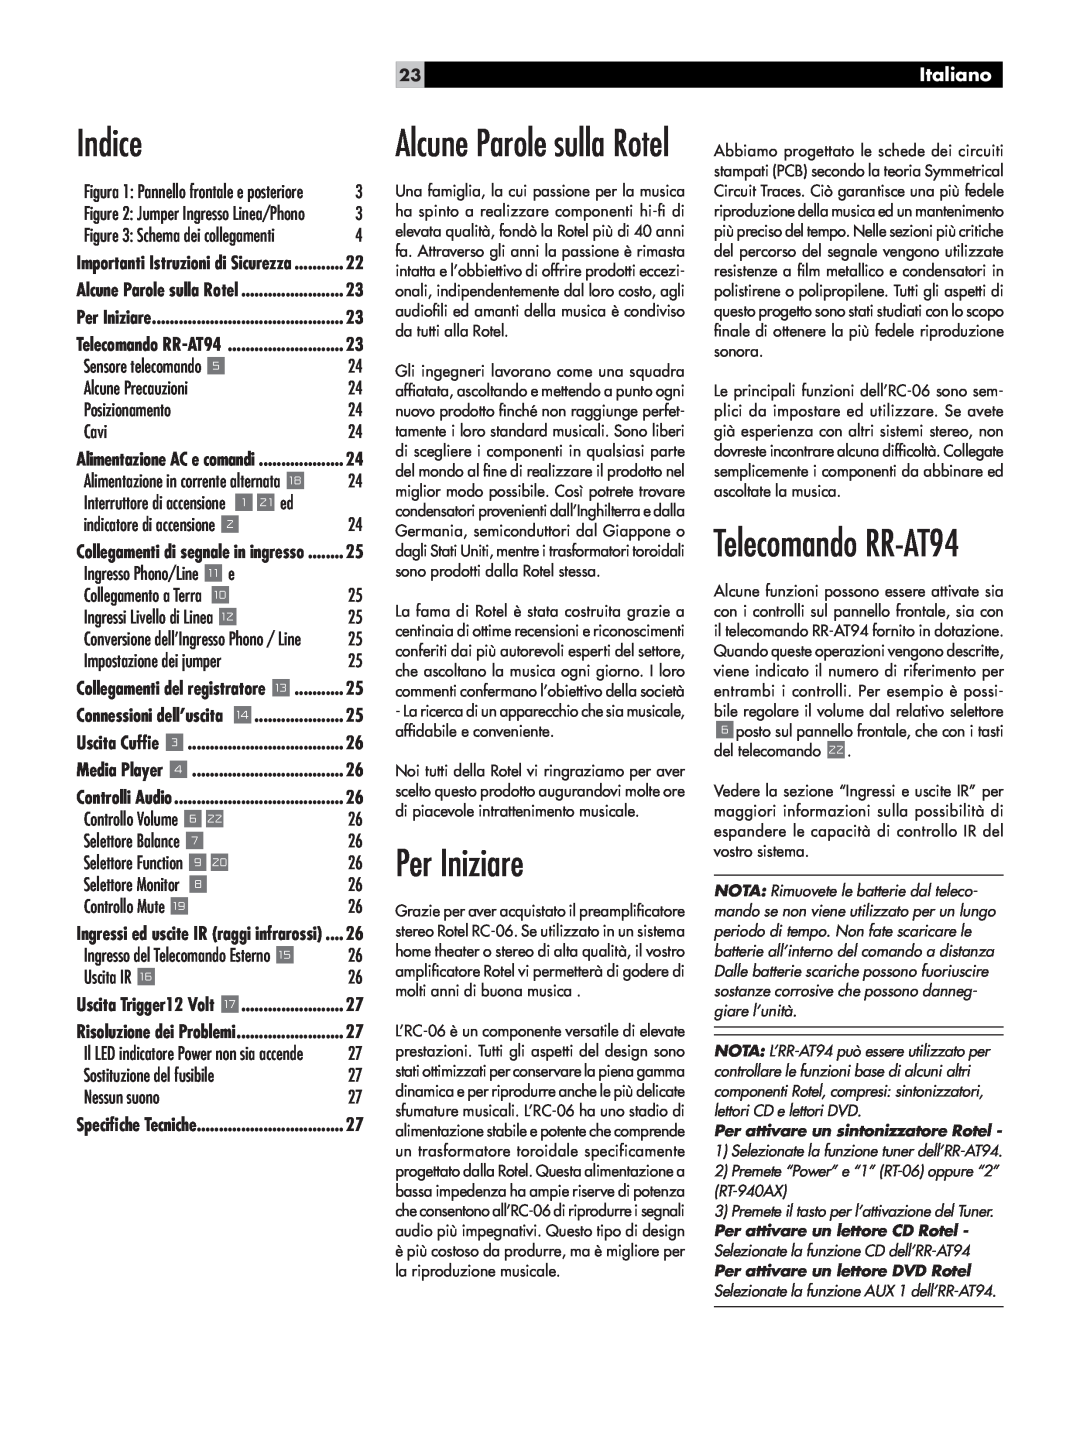 Rotel RC-06 owner manual Indice, Per Iniziare, Telecomando RR-AT94, Alcune Parole sulla Rotel, Italiano 